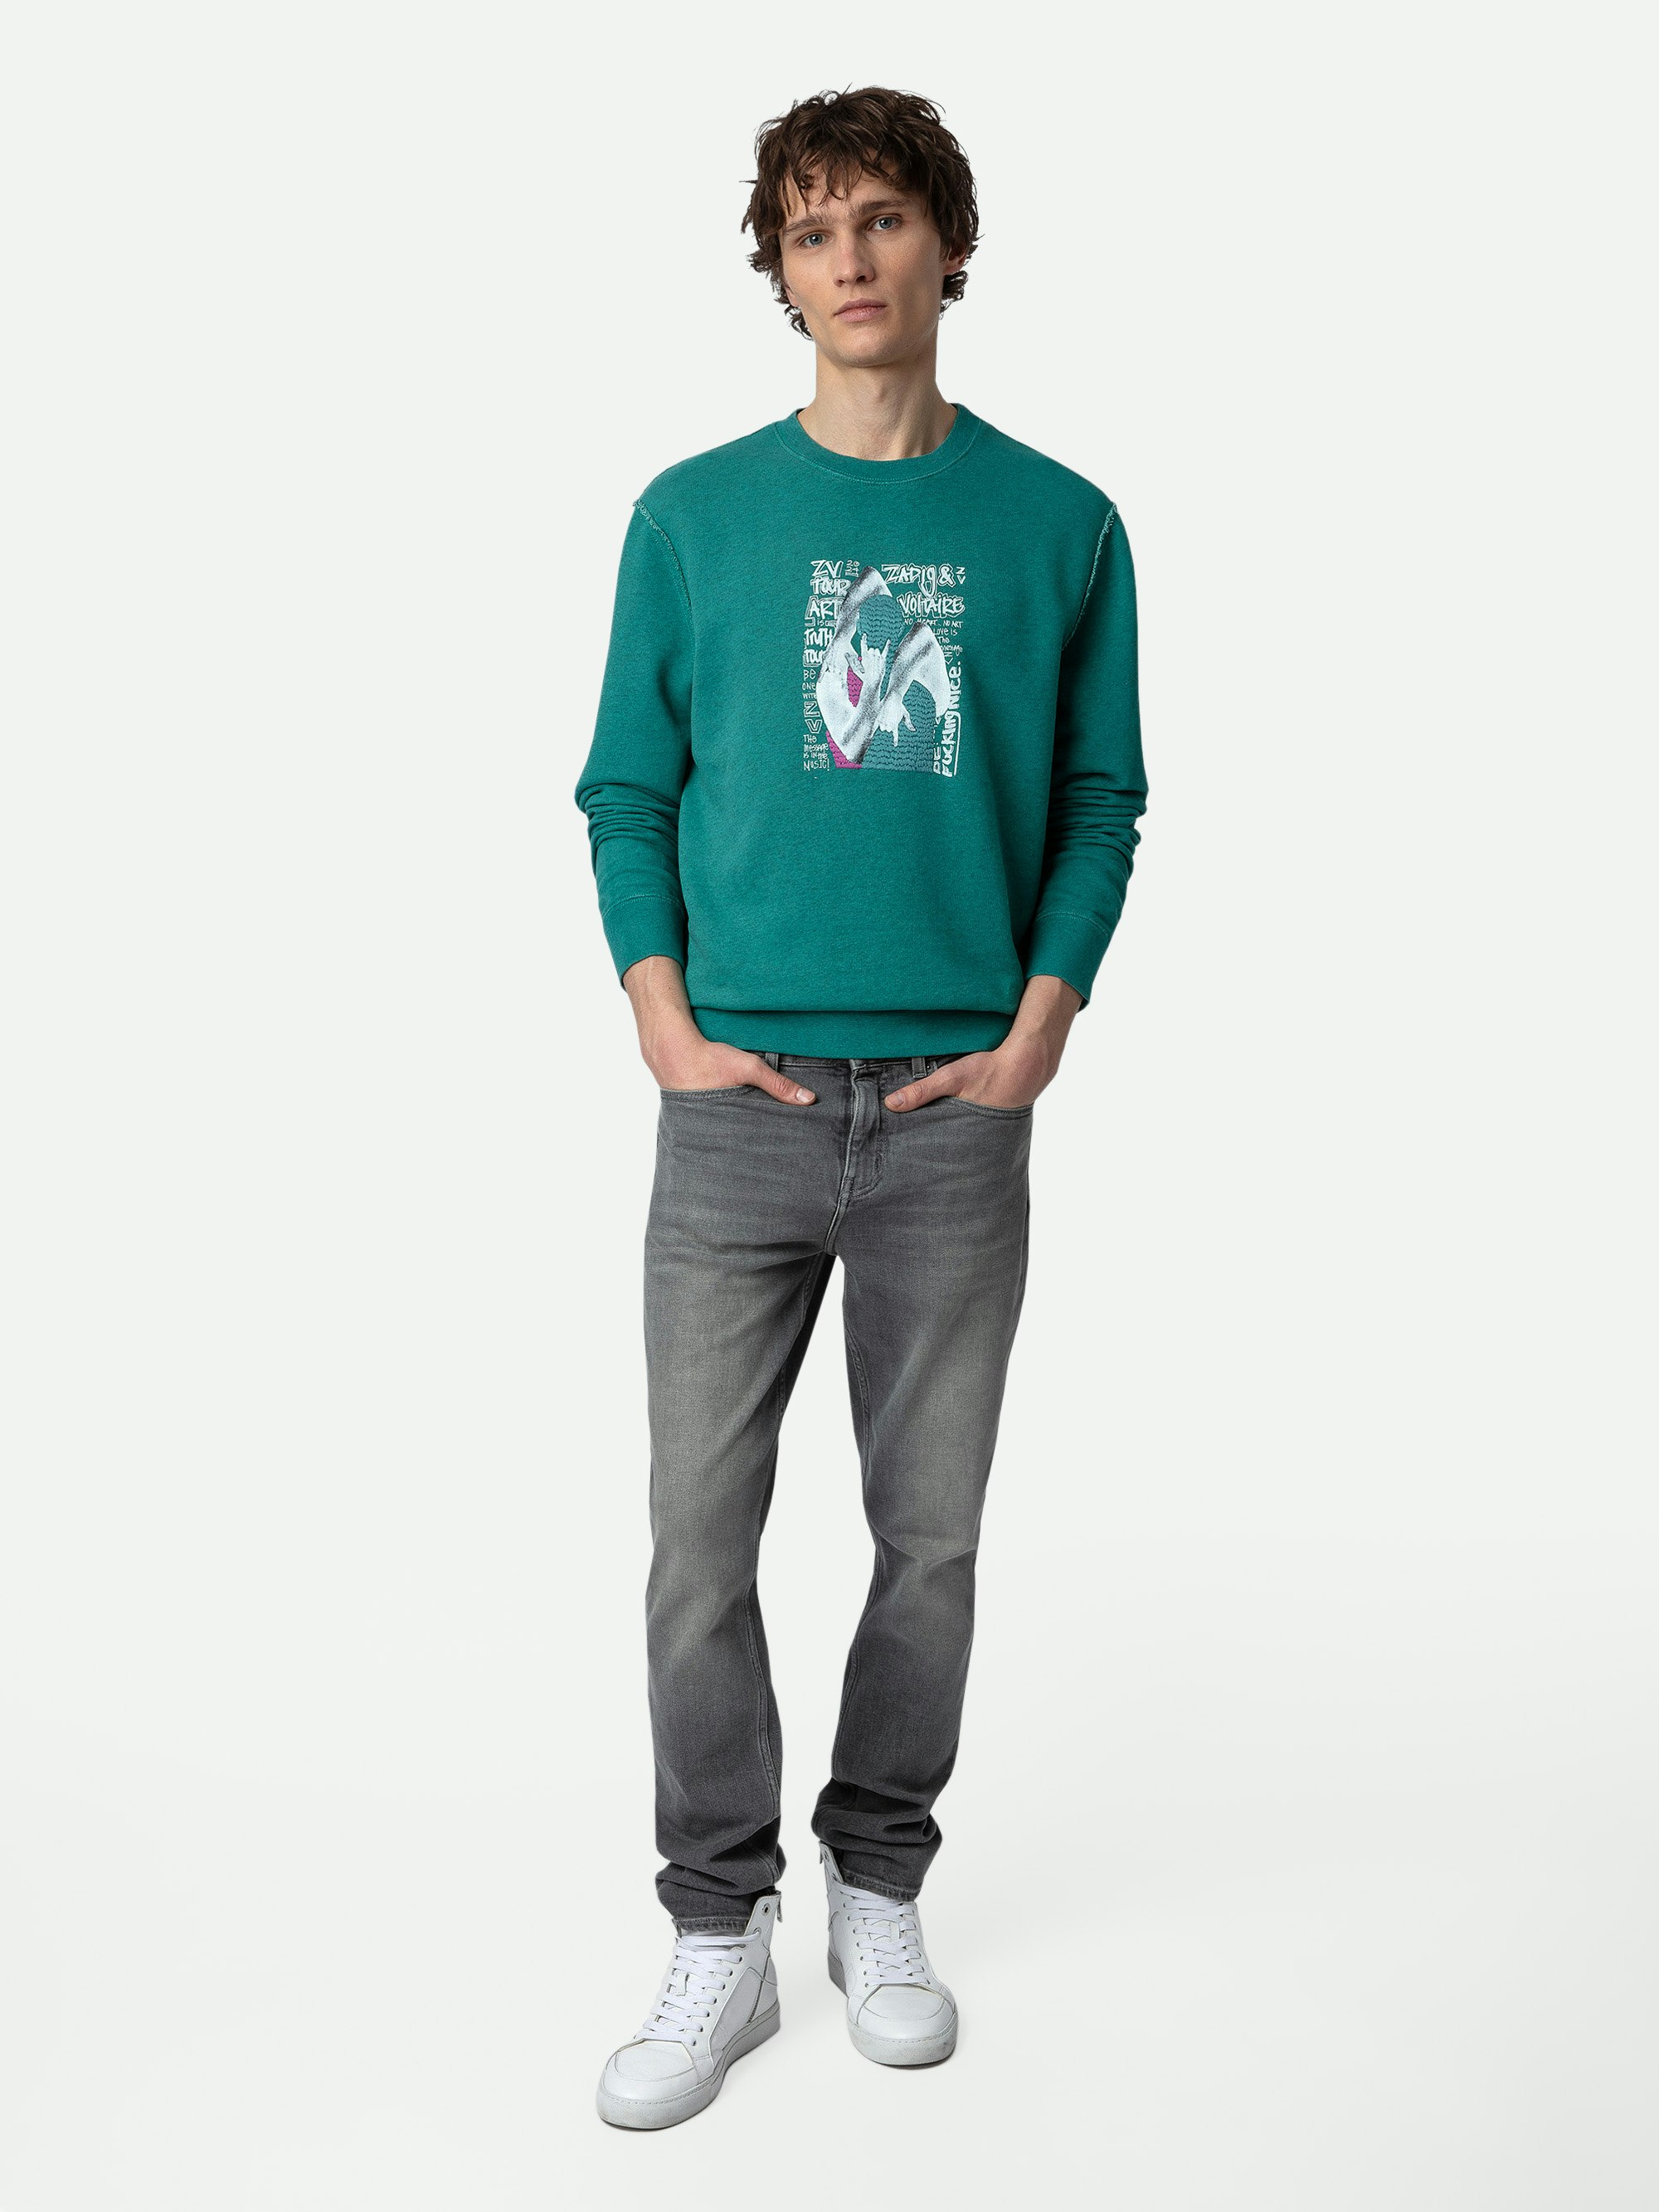 Simba Sweatshirt - Blue long sleeve sweatshirt with photoprint on front.